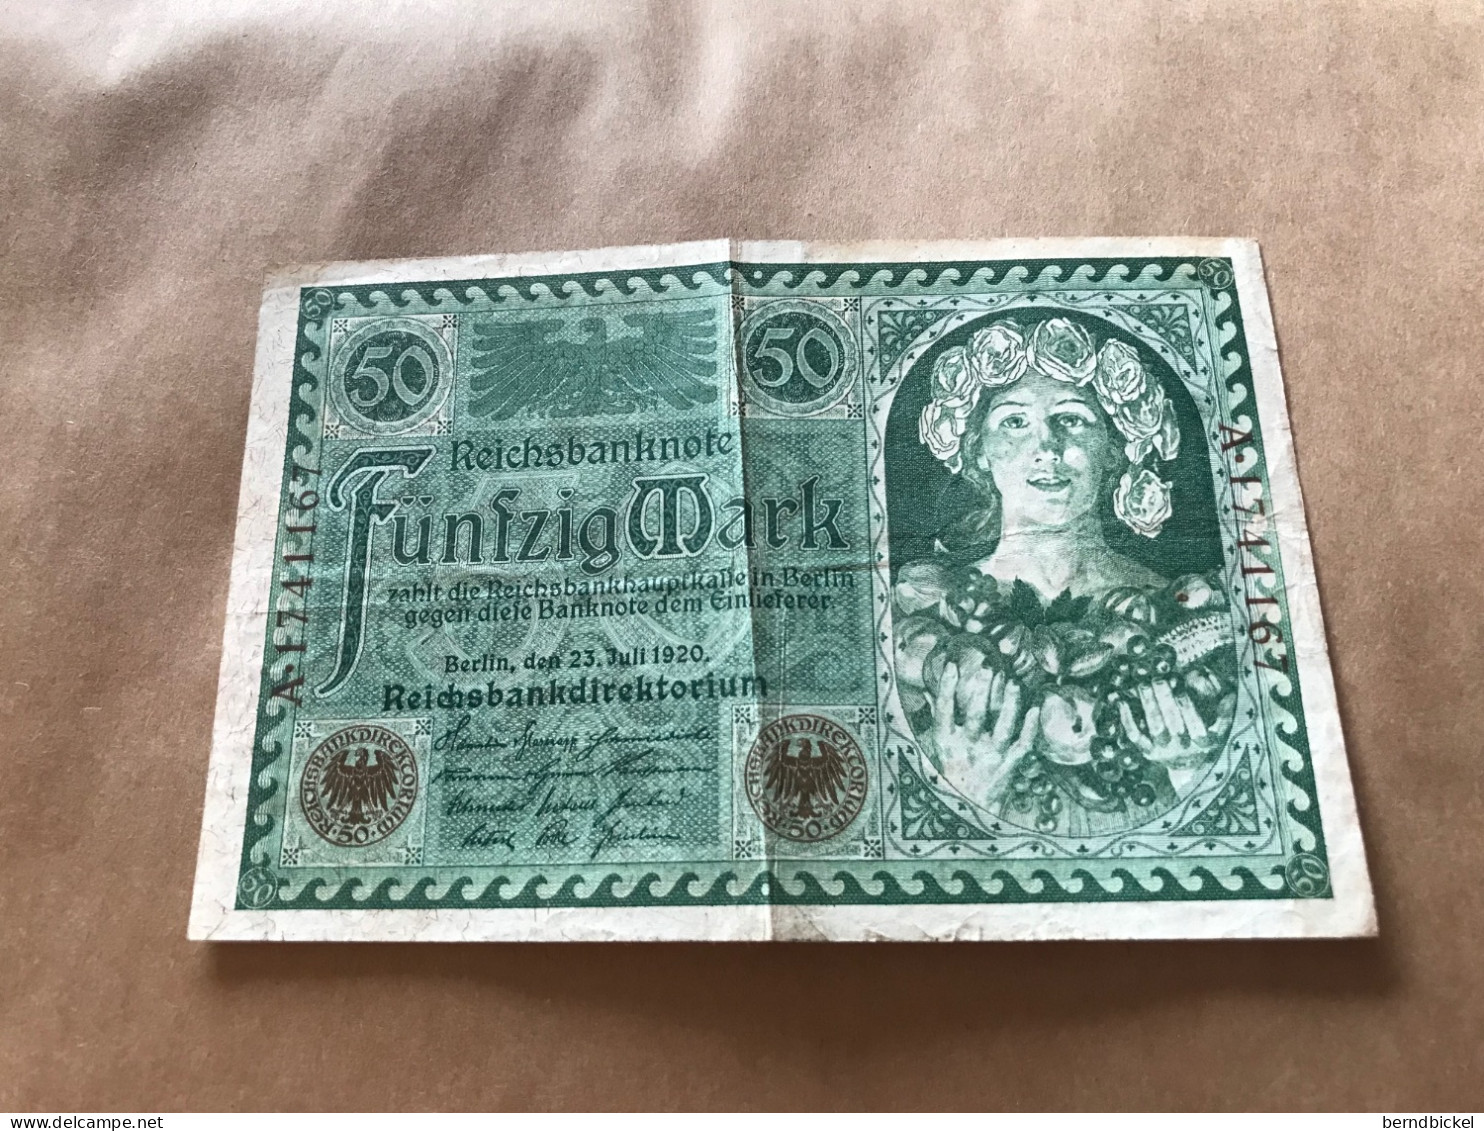 Banknote Geldschein Reichsbanknote Deutsches Reich 50 Mark 1920 - 50 Mark